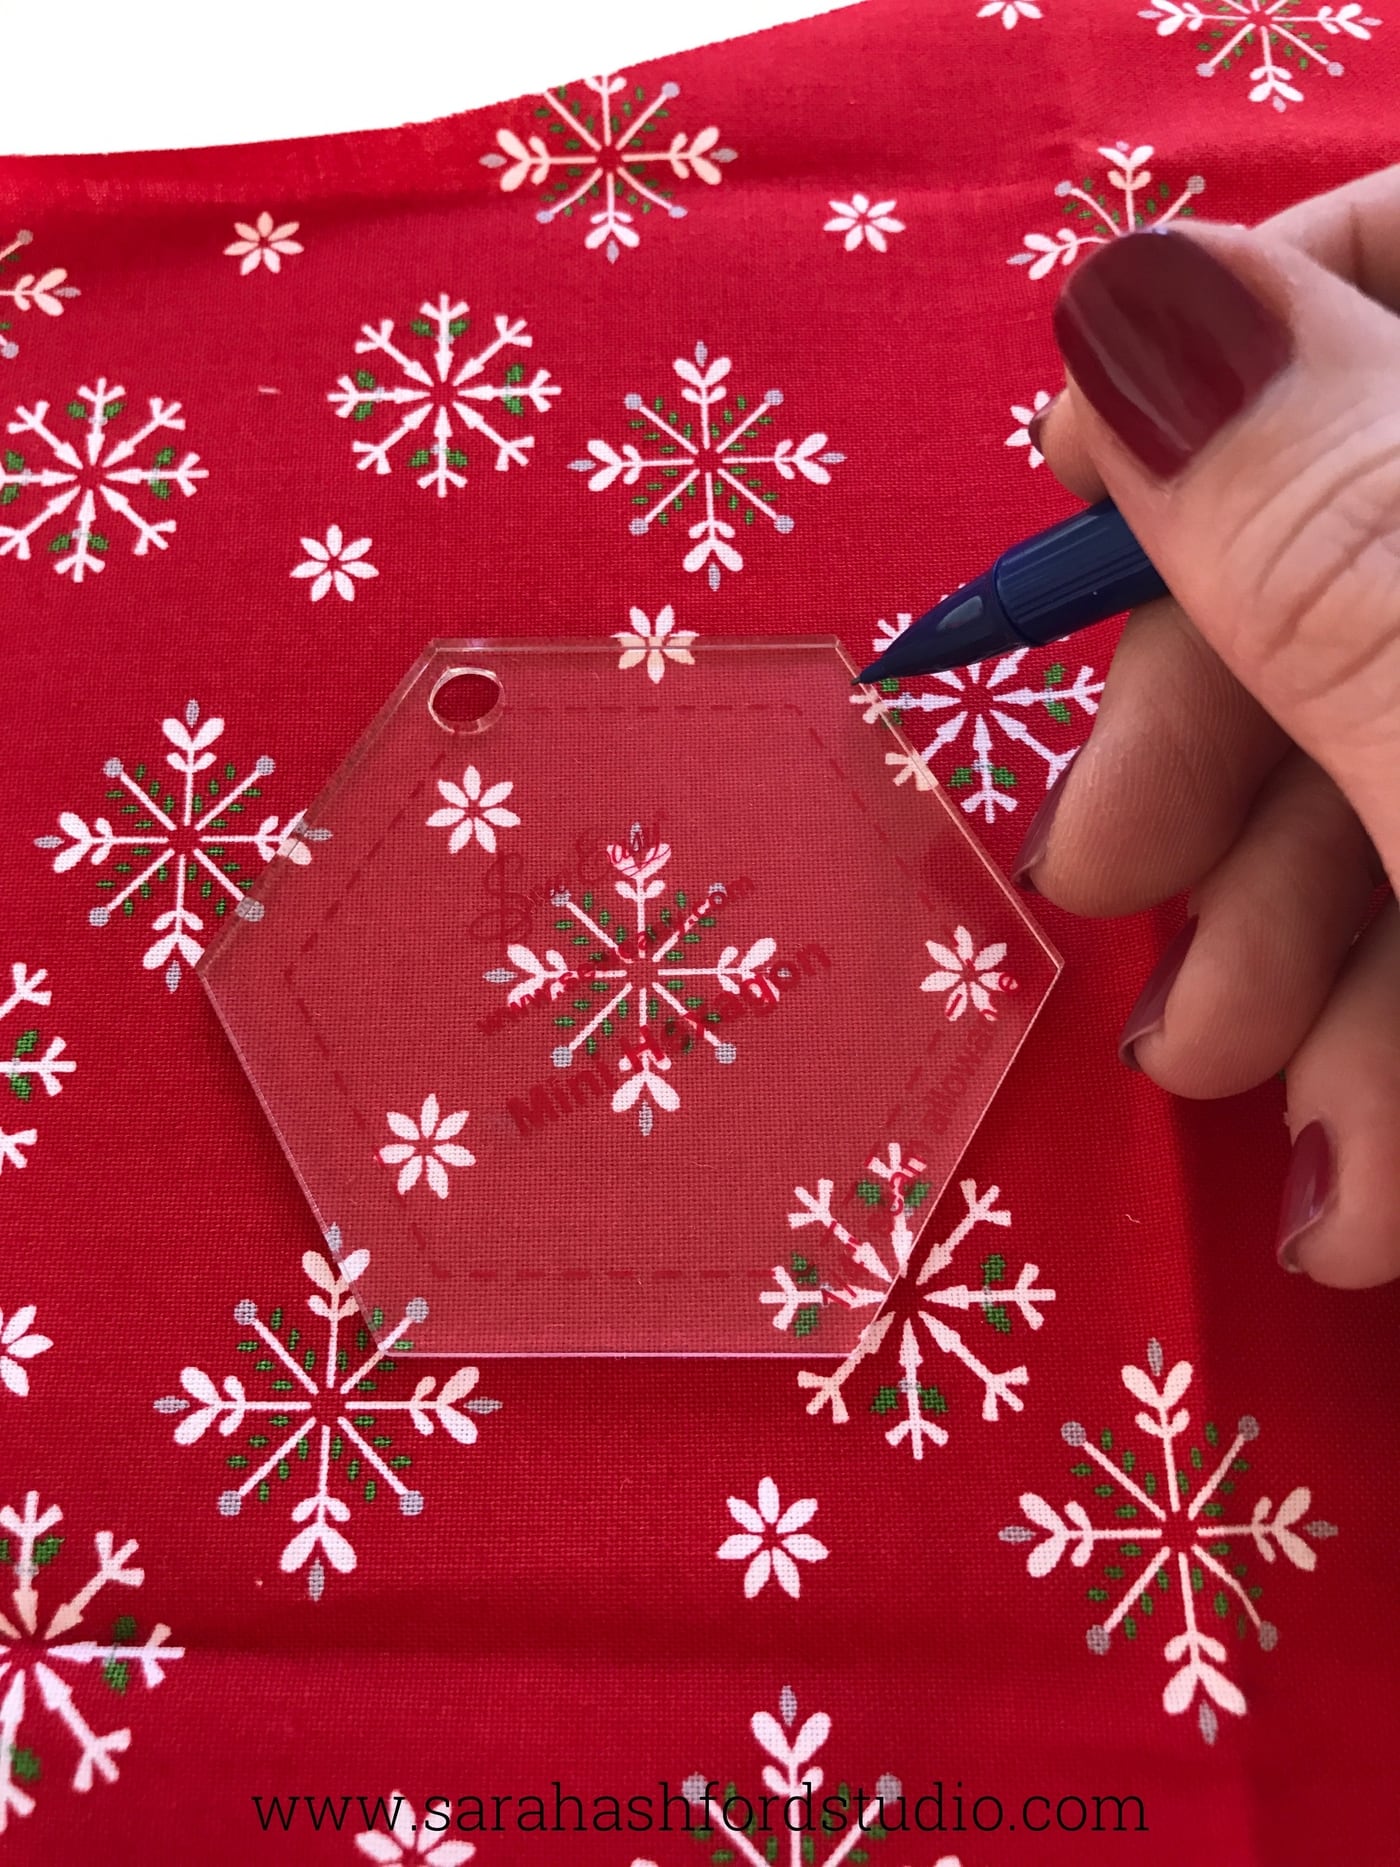 Tutoriel super mignon sur les torchons Hexie de Noël par Sarah Ashford. Une idée de cadeau de Noël tellement amusante ; apprenez à coudre des hexagones ! #cadeauxdenoel #christmassewing #hexies #hexagones #hexagontutorial #christmasfabric #teatowel